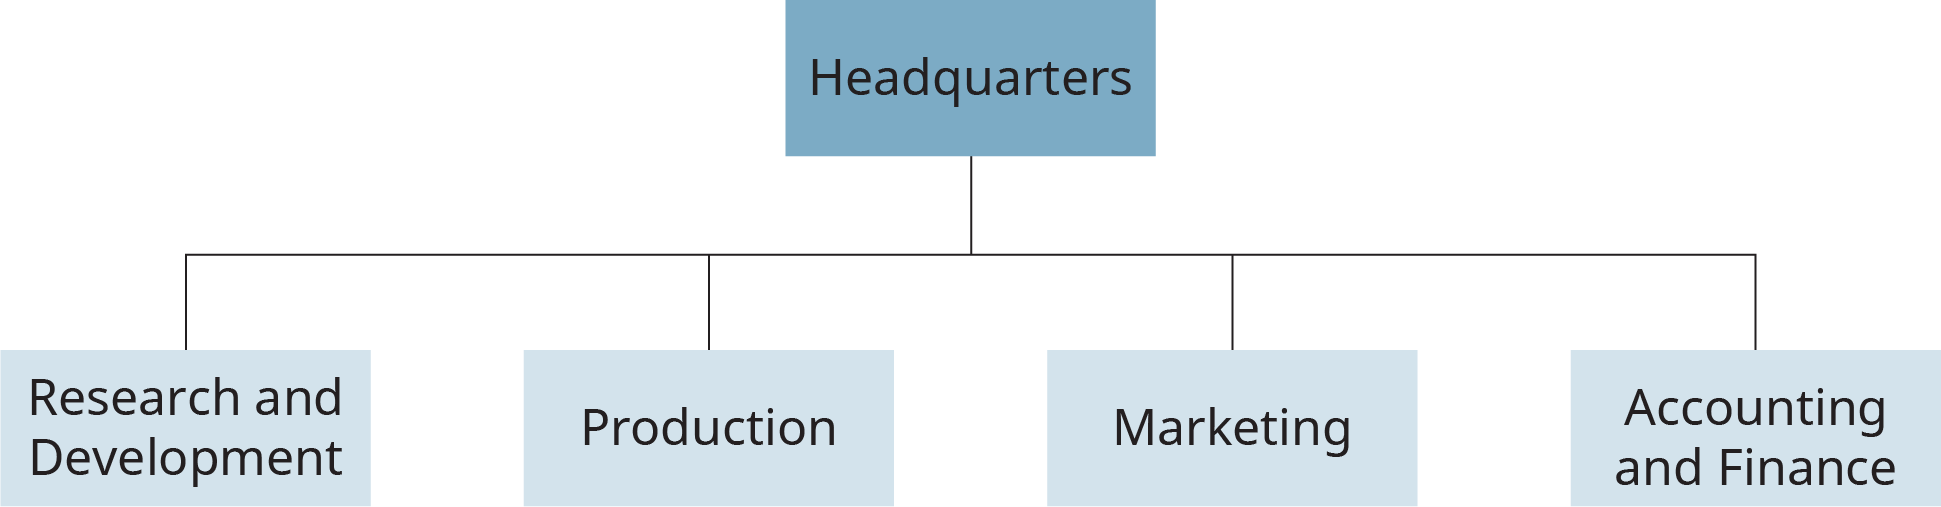 Um fluxograma mostra um exemplo de estrutura funcional em uma organização. Mostra a filial principal chamada “Sede” dividida em quatro sub-filiais denominadas “Pesquisa e Desenvolvimento”, “Produção”, “Marketing” e “Contabilidade e Finanças”.